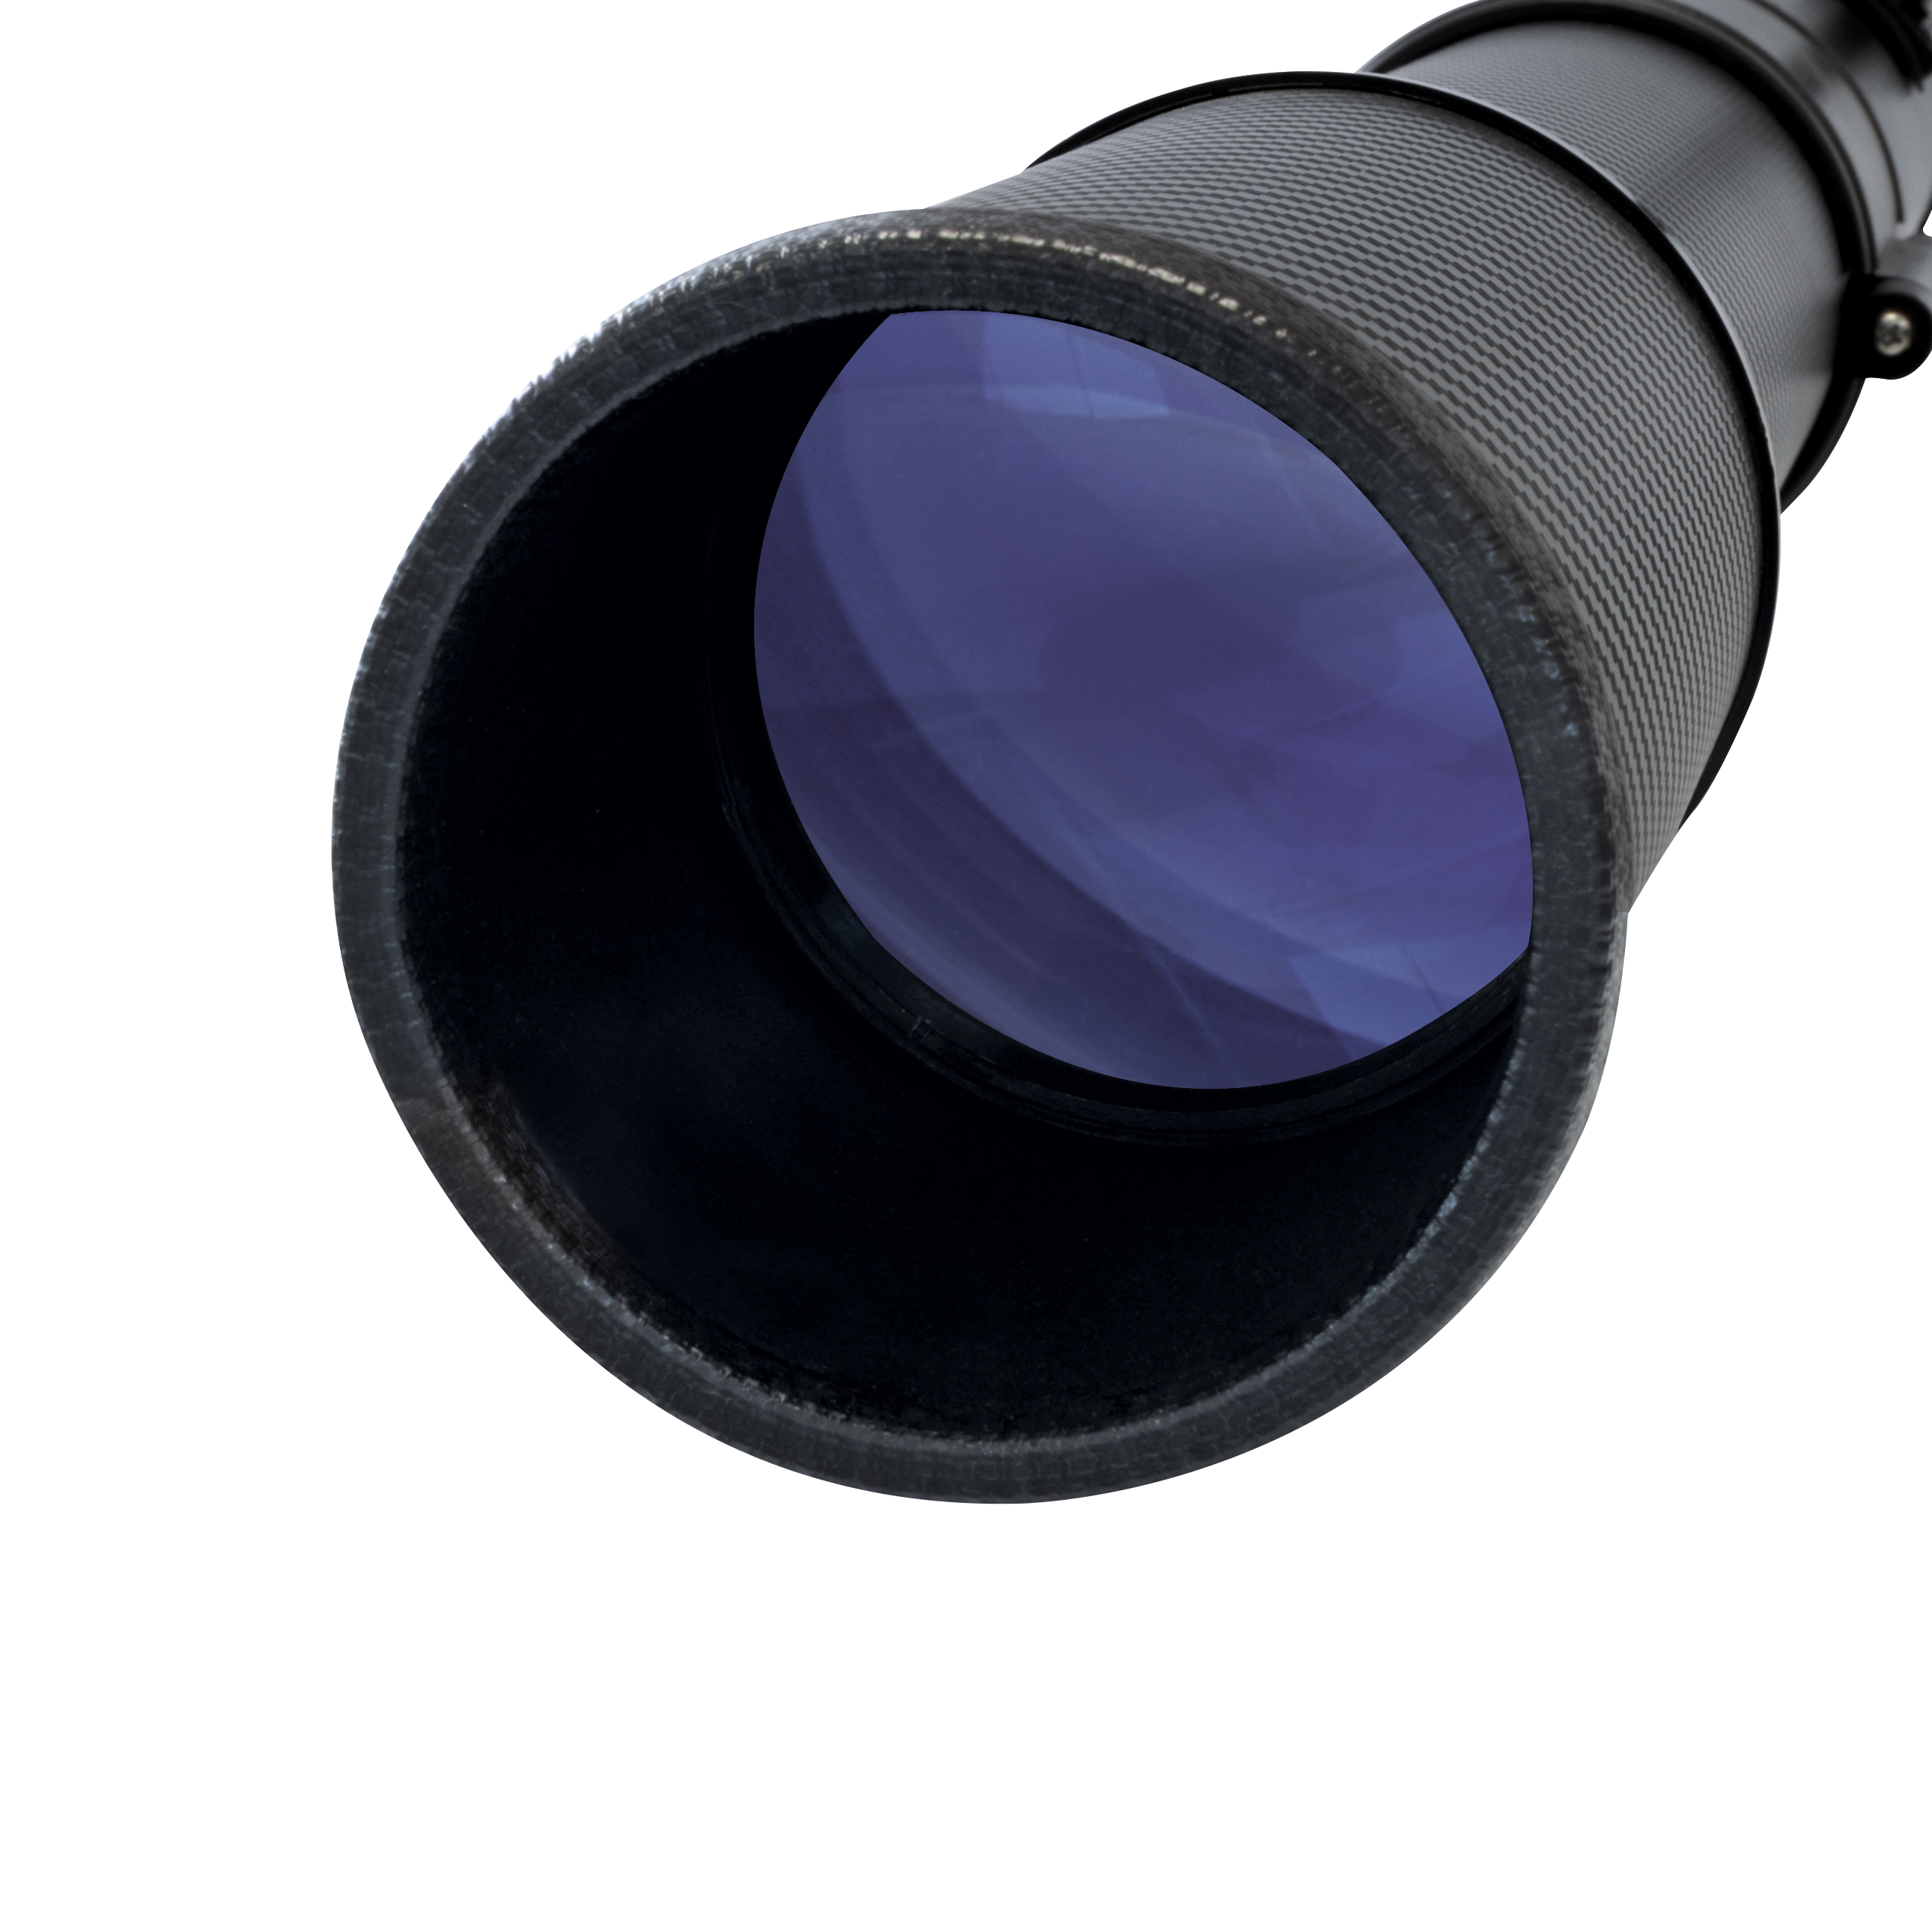 BRESSER Polaris-II 70/900 EQ3 Télescope à lentille avec adaptateur pour smartphone & filtre solaire